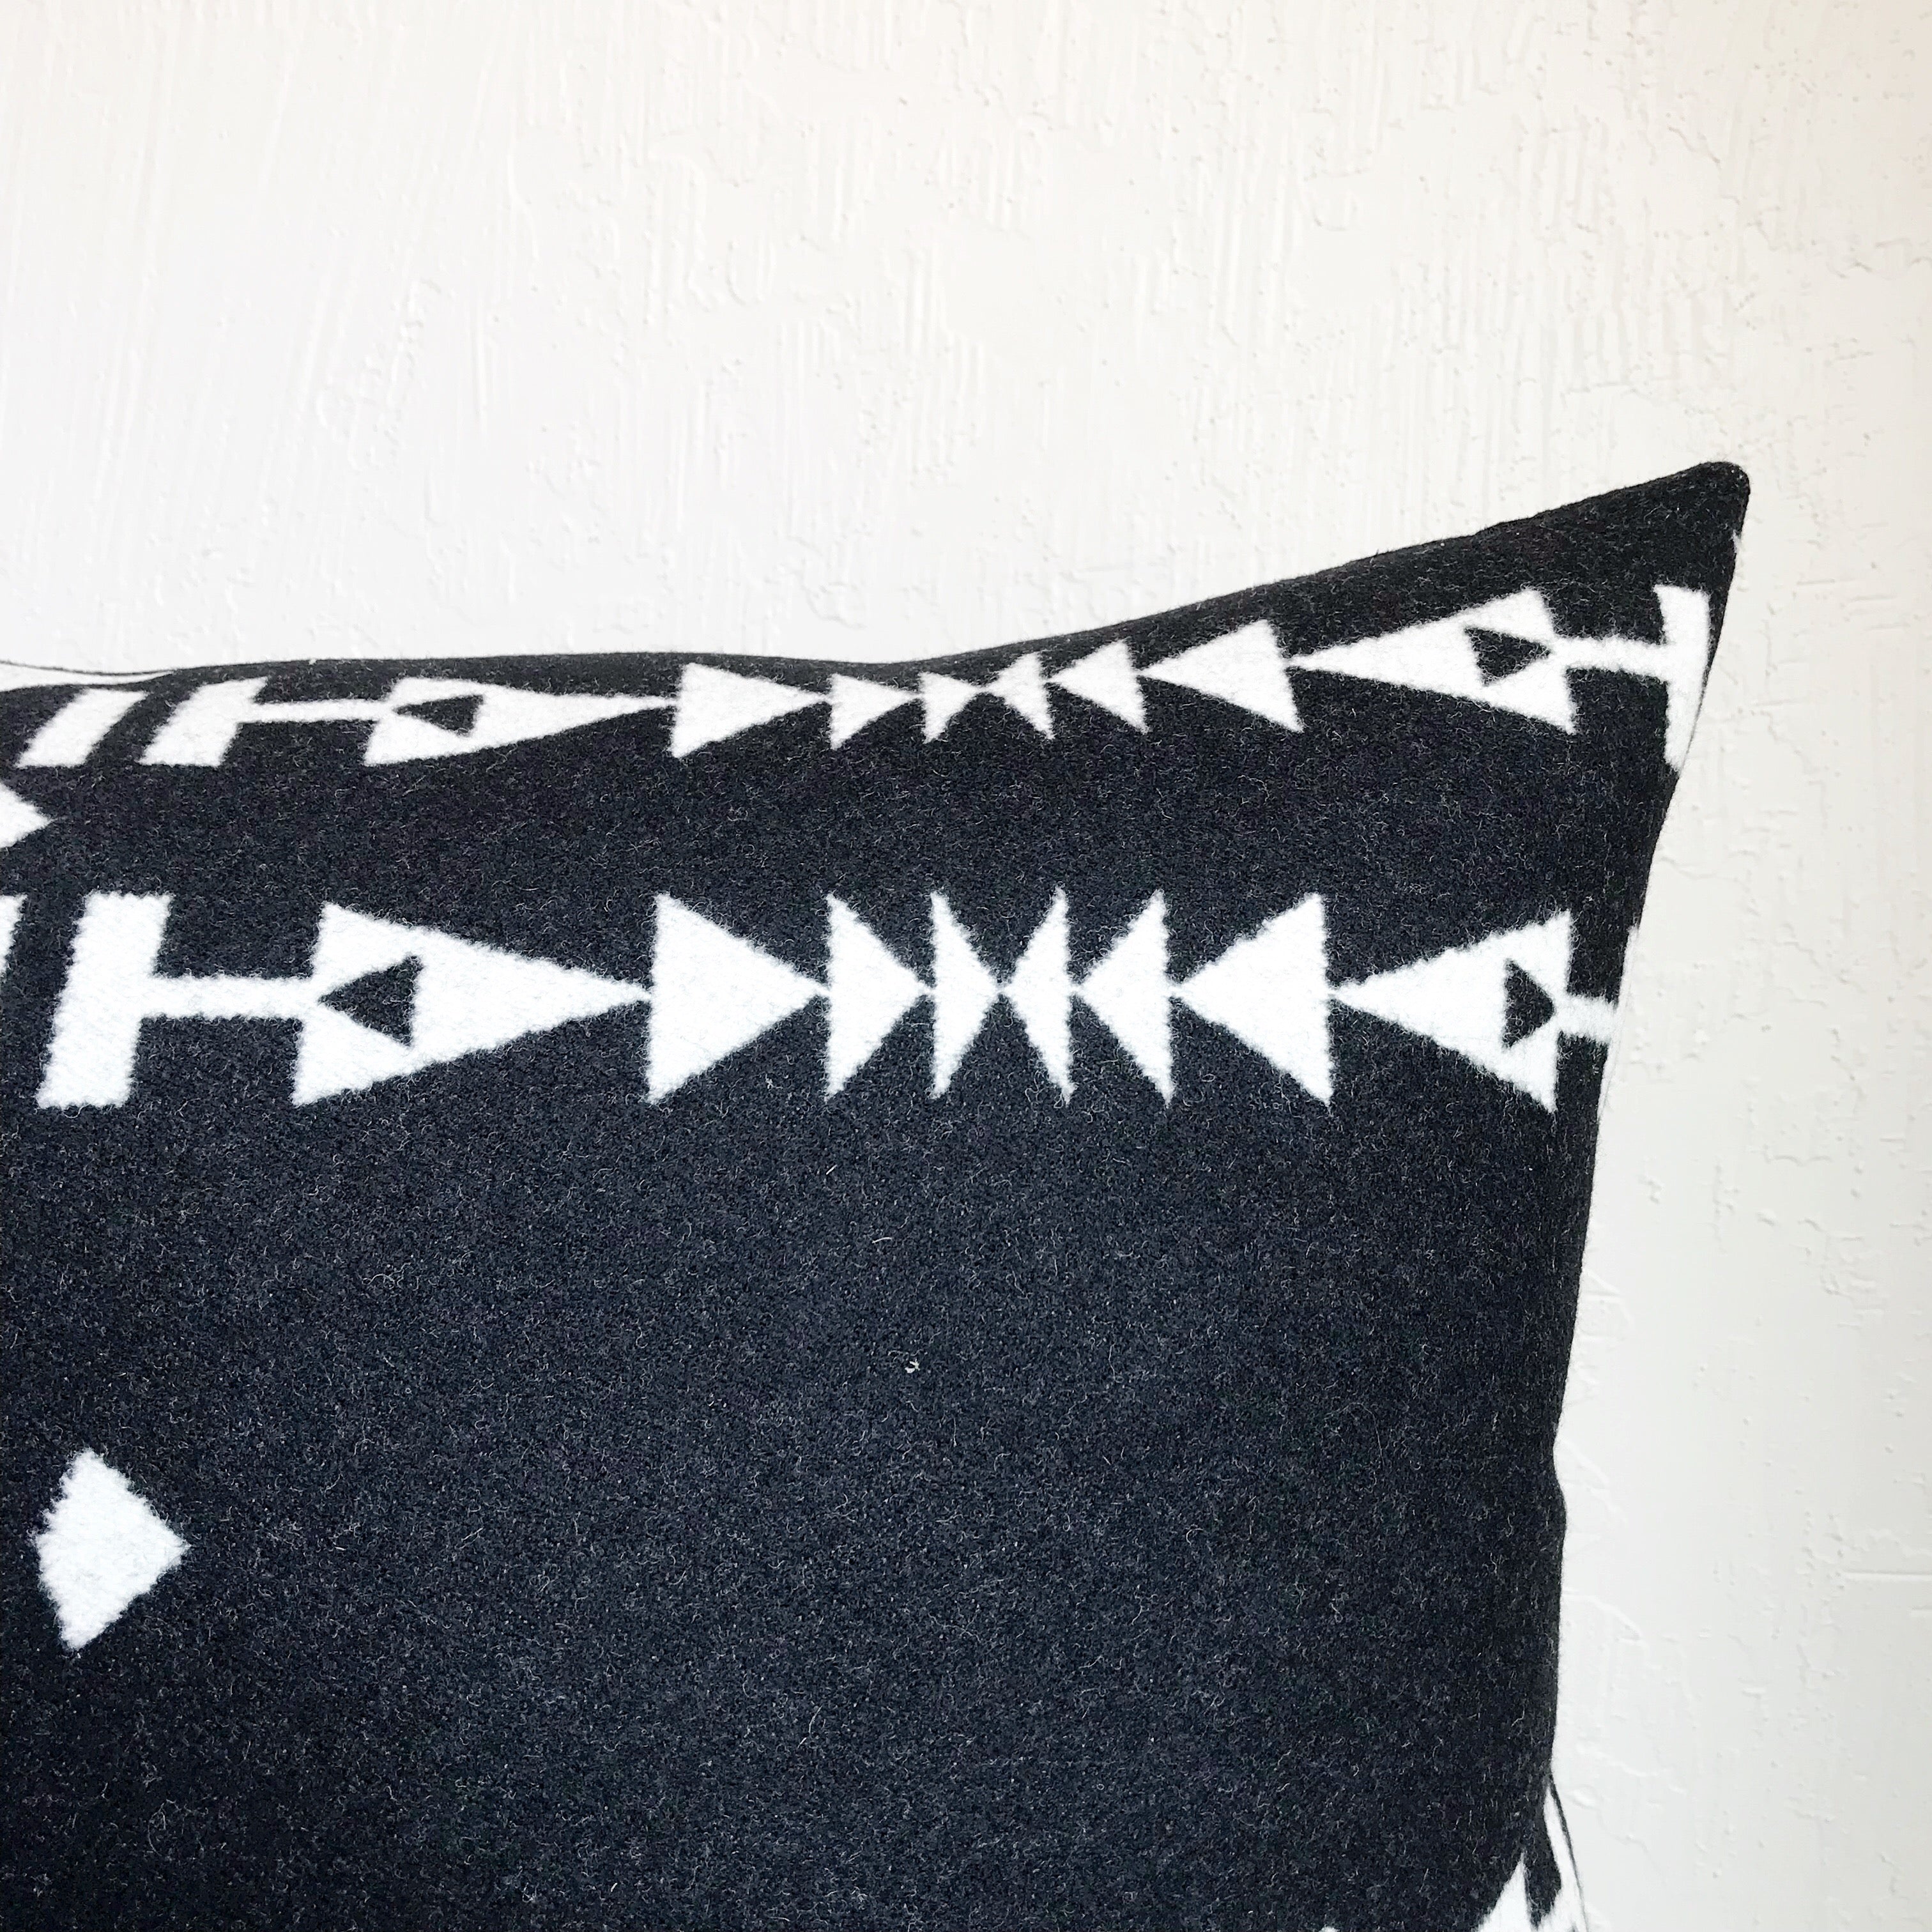 Northwest Pillow Cover - Condensed (lumbar)